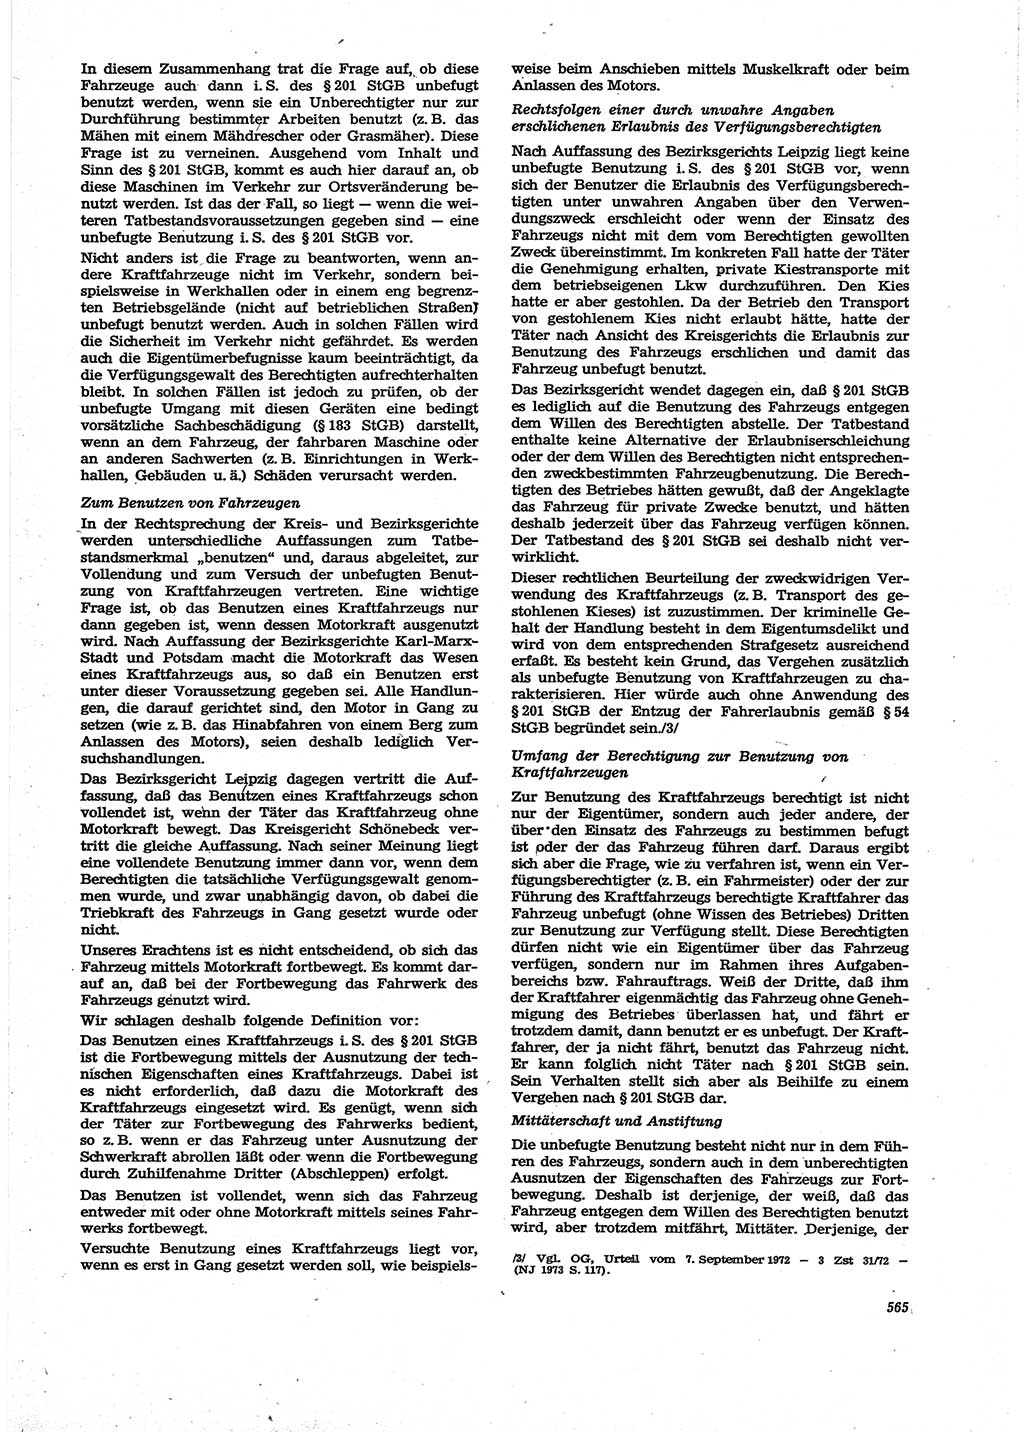 Neue Justiz (NJ), Zeitschrift für Recht und Rechtswissenschaft [Deutsche Demokratische Republik (DDR)], 27. Jahrgang 1973, Seite 565 (NJ DDR 1973, S. 565)